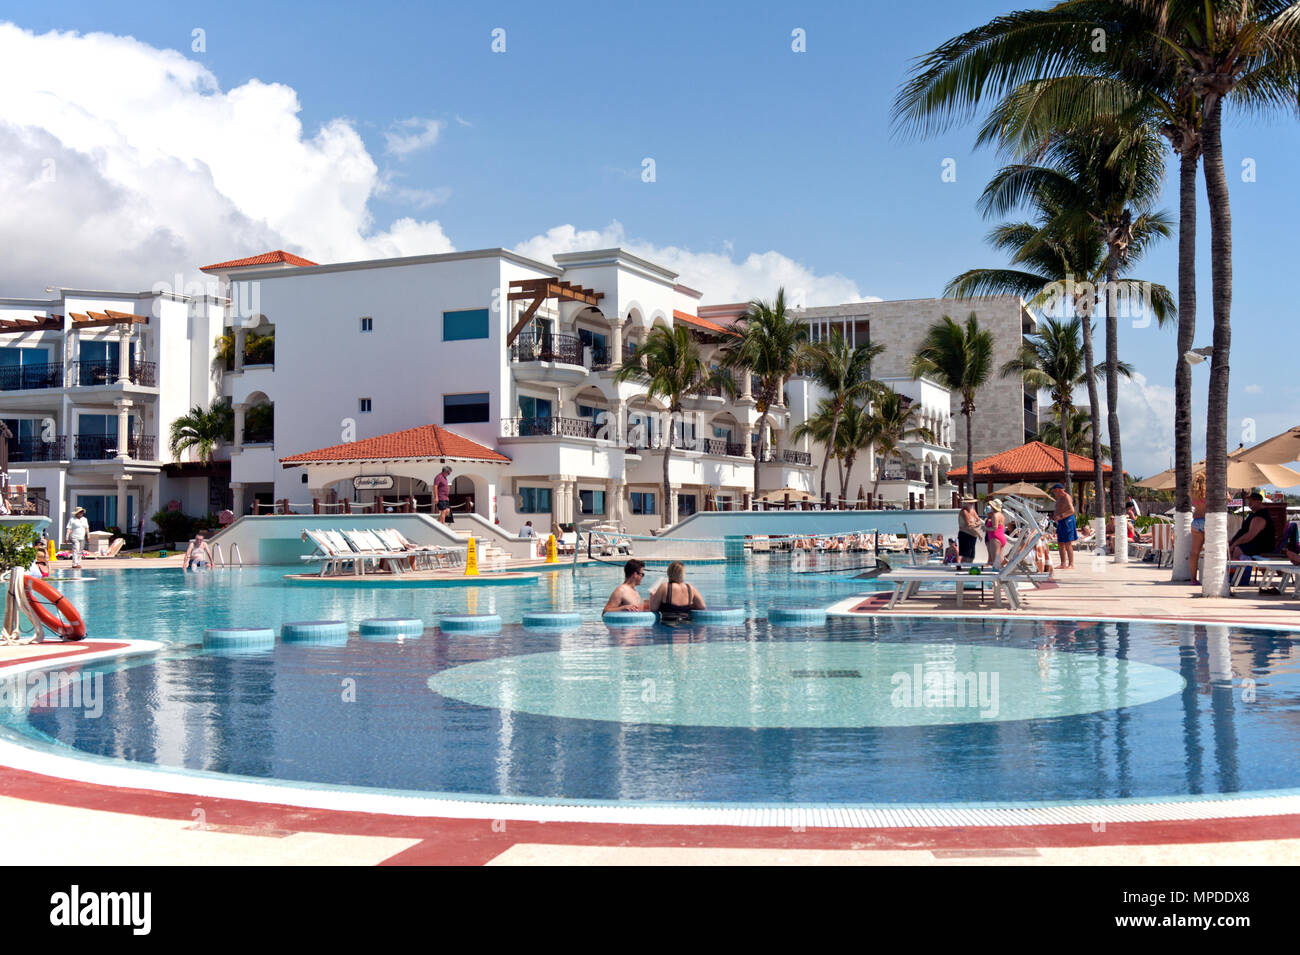 Piscina frente a la playa, el Real Playa del Carmen resort sólo para adultos, Quintana Roo, México. Foto de stock